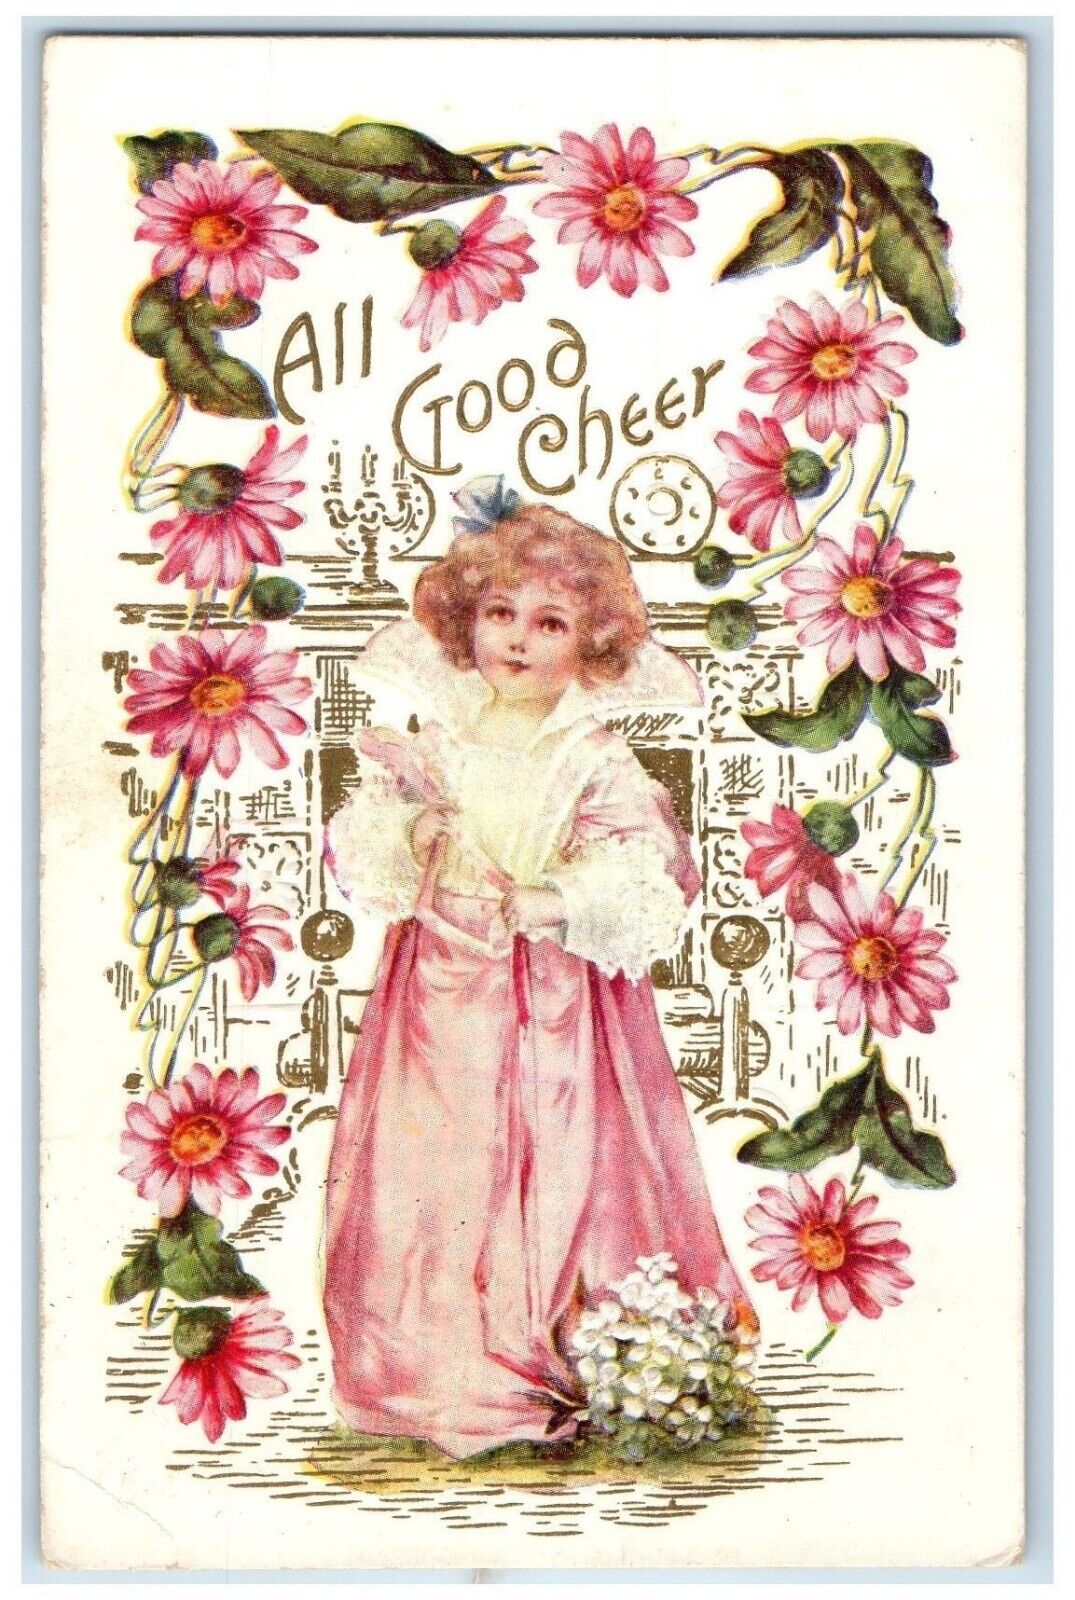 1909 Little Girl All Good Cheer Flowers Embossed Johnstown New York NY Postcard